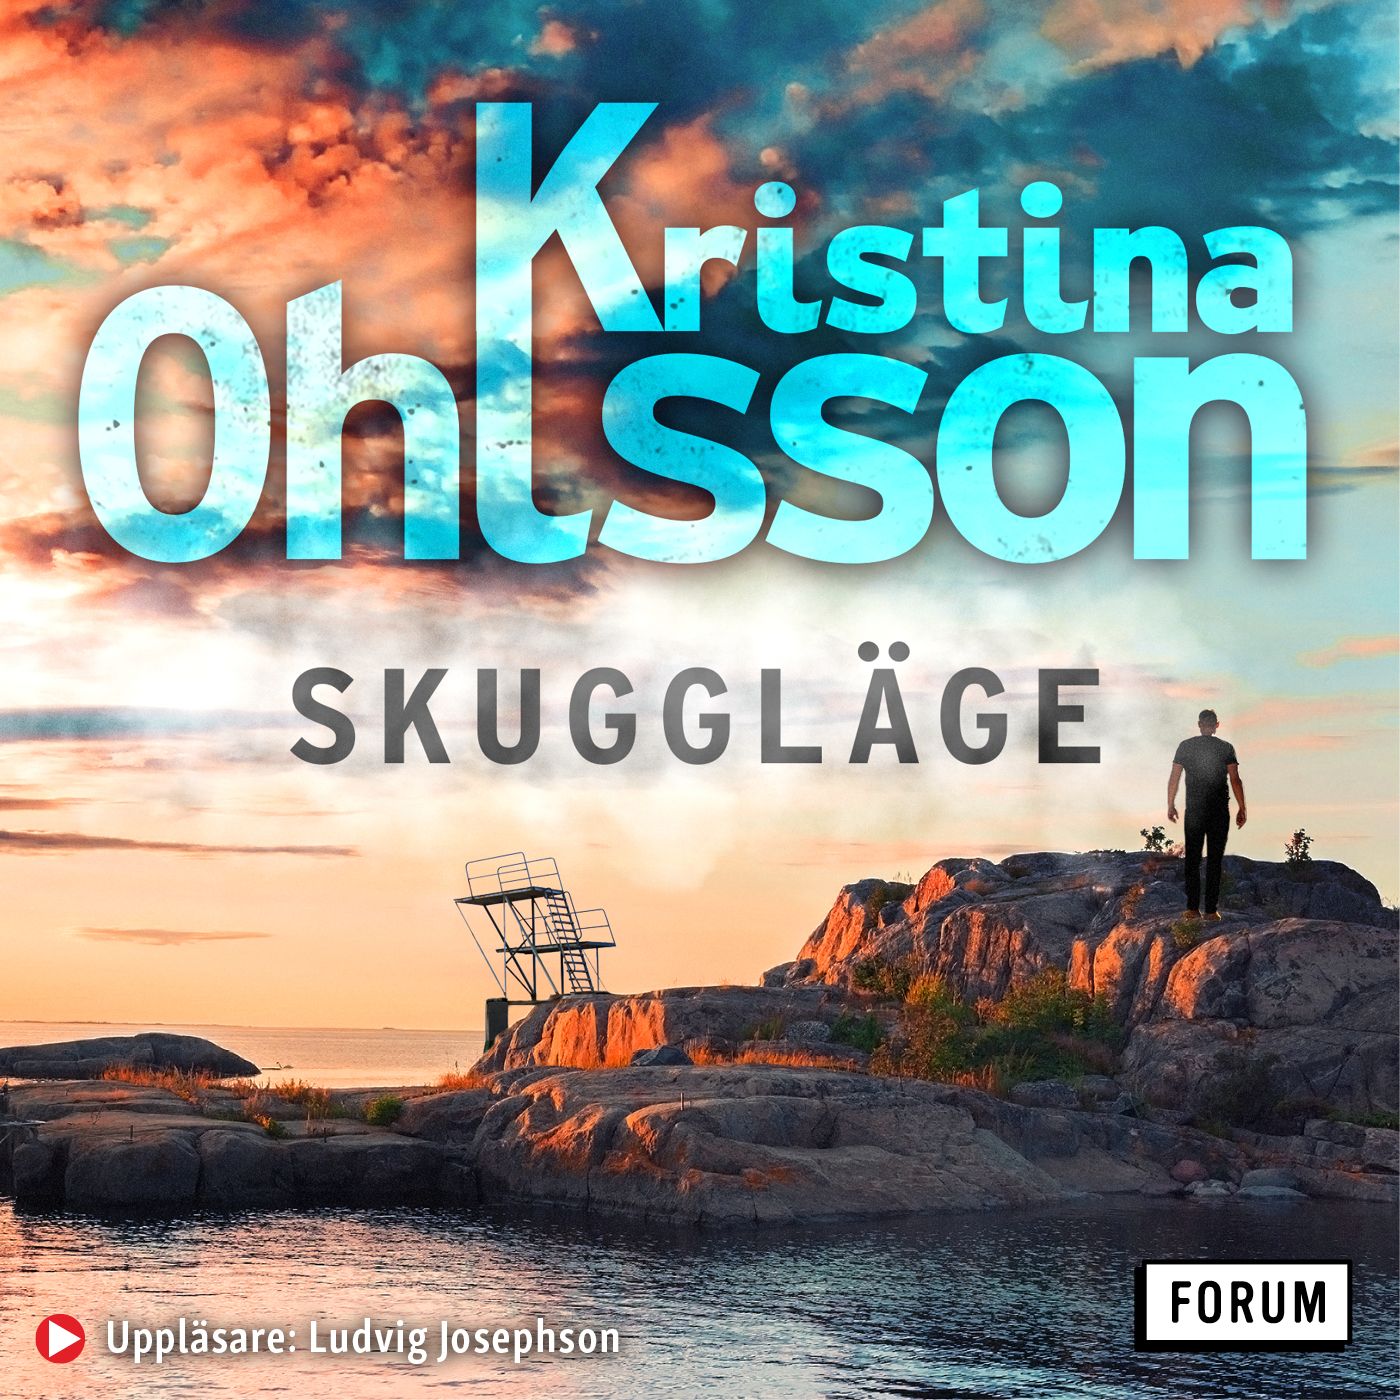 Skuggläge, ljudbok av Kristina Ohlsson